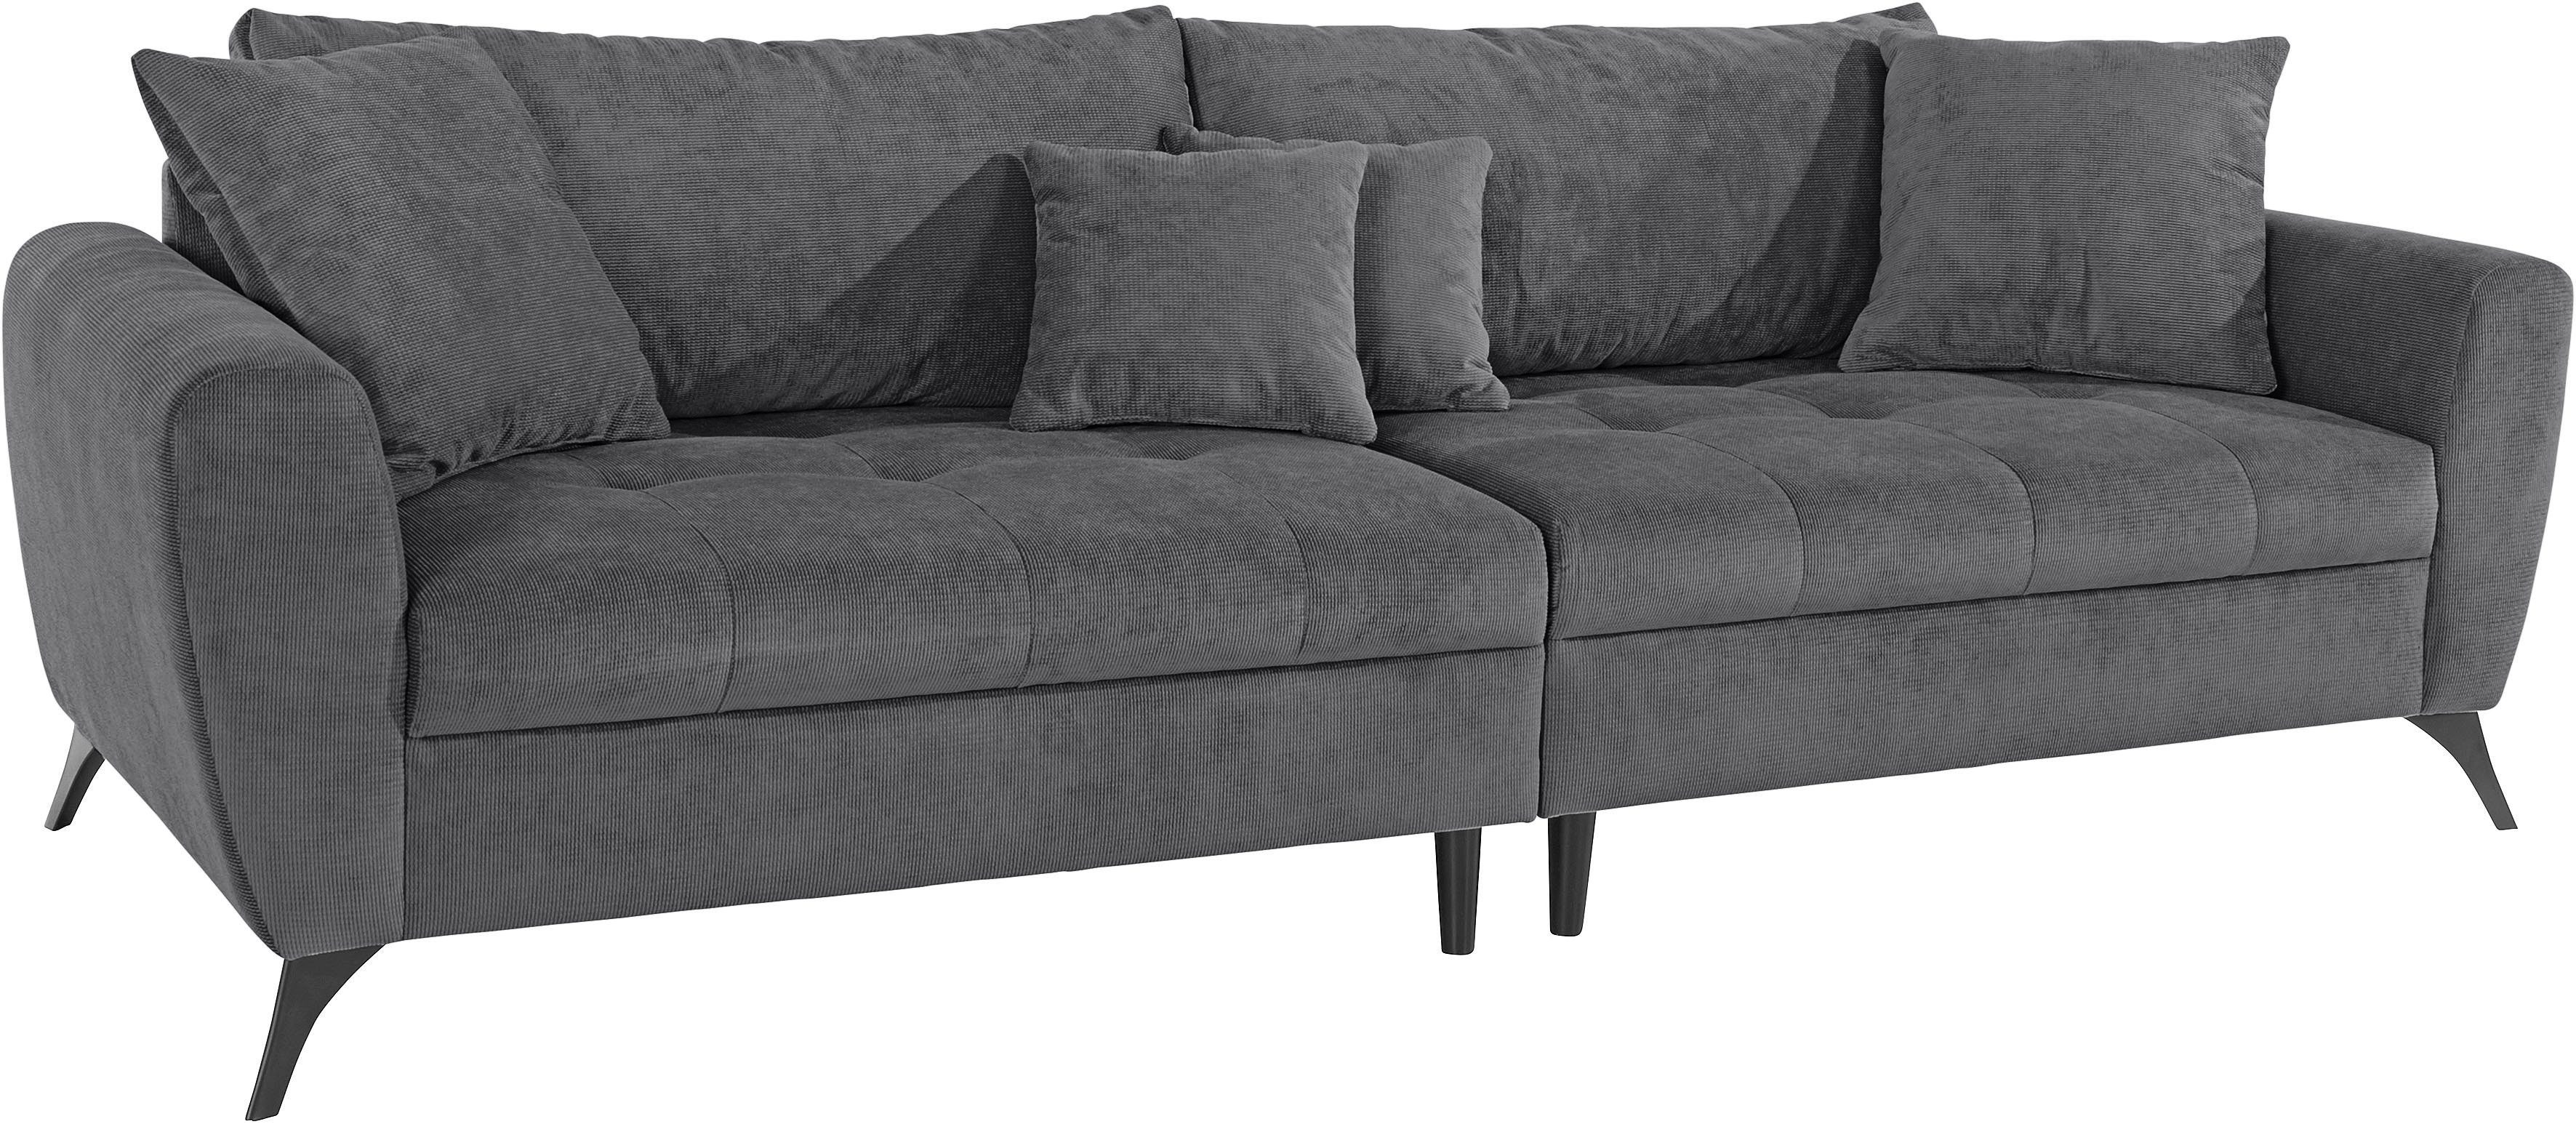 Big-Sofa bis Sitzplatz, mit INOSIGN Belastbarkeit Lörby, Aqua clean-Bezug auch 140kg pro